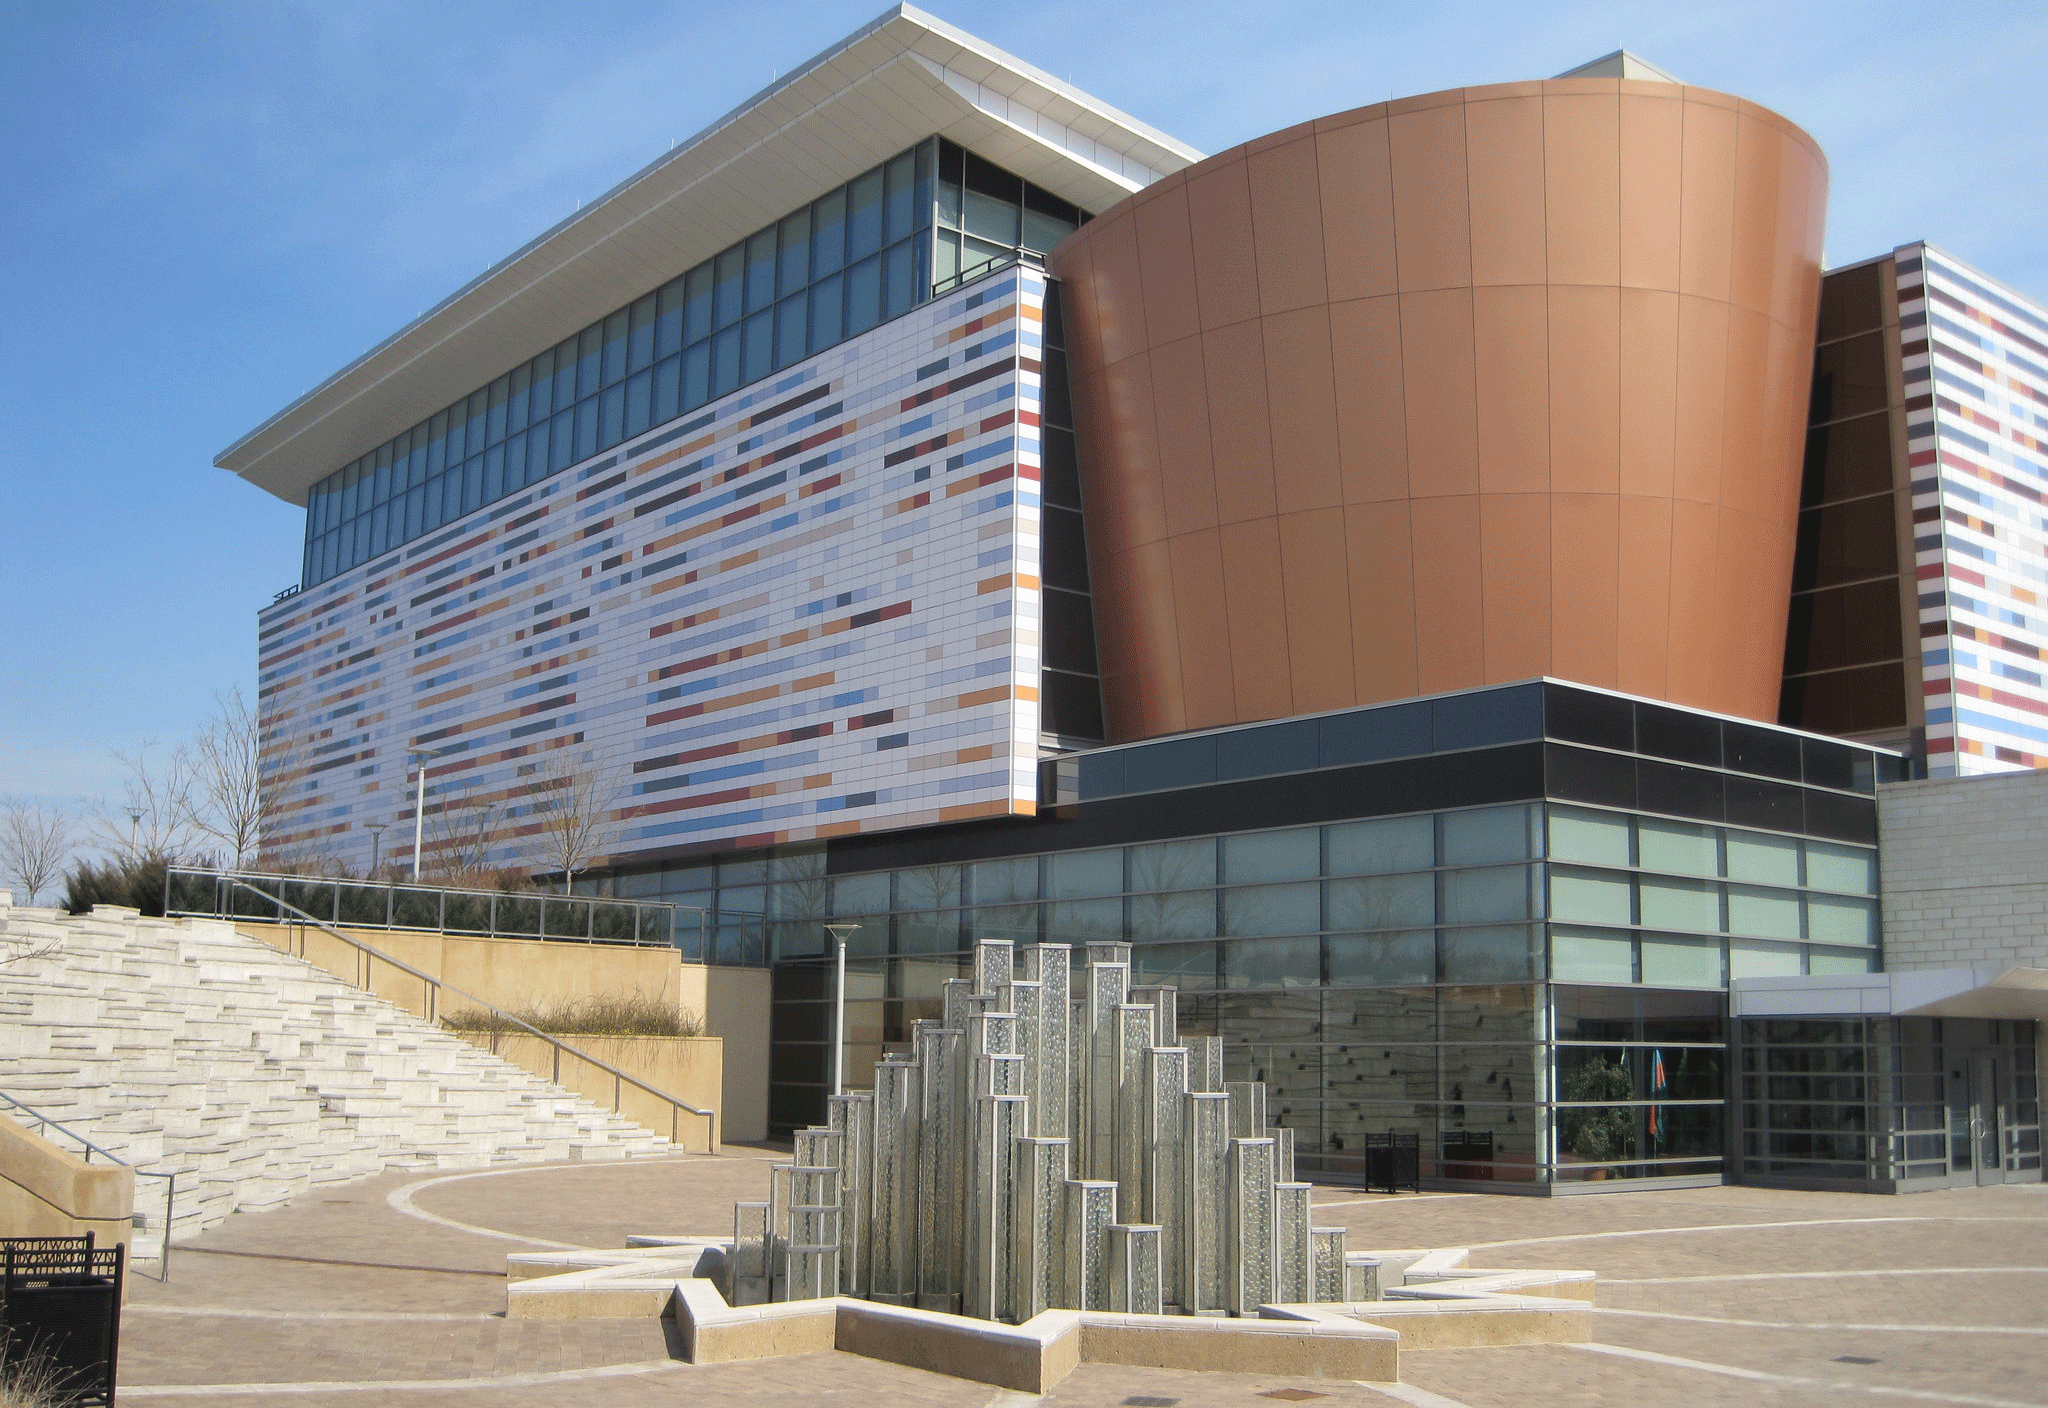 Muhammad Ali Center